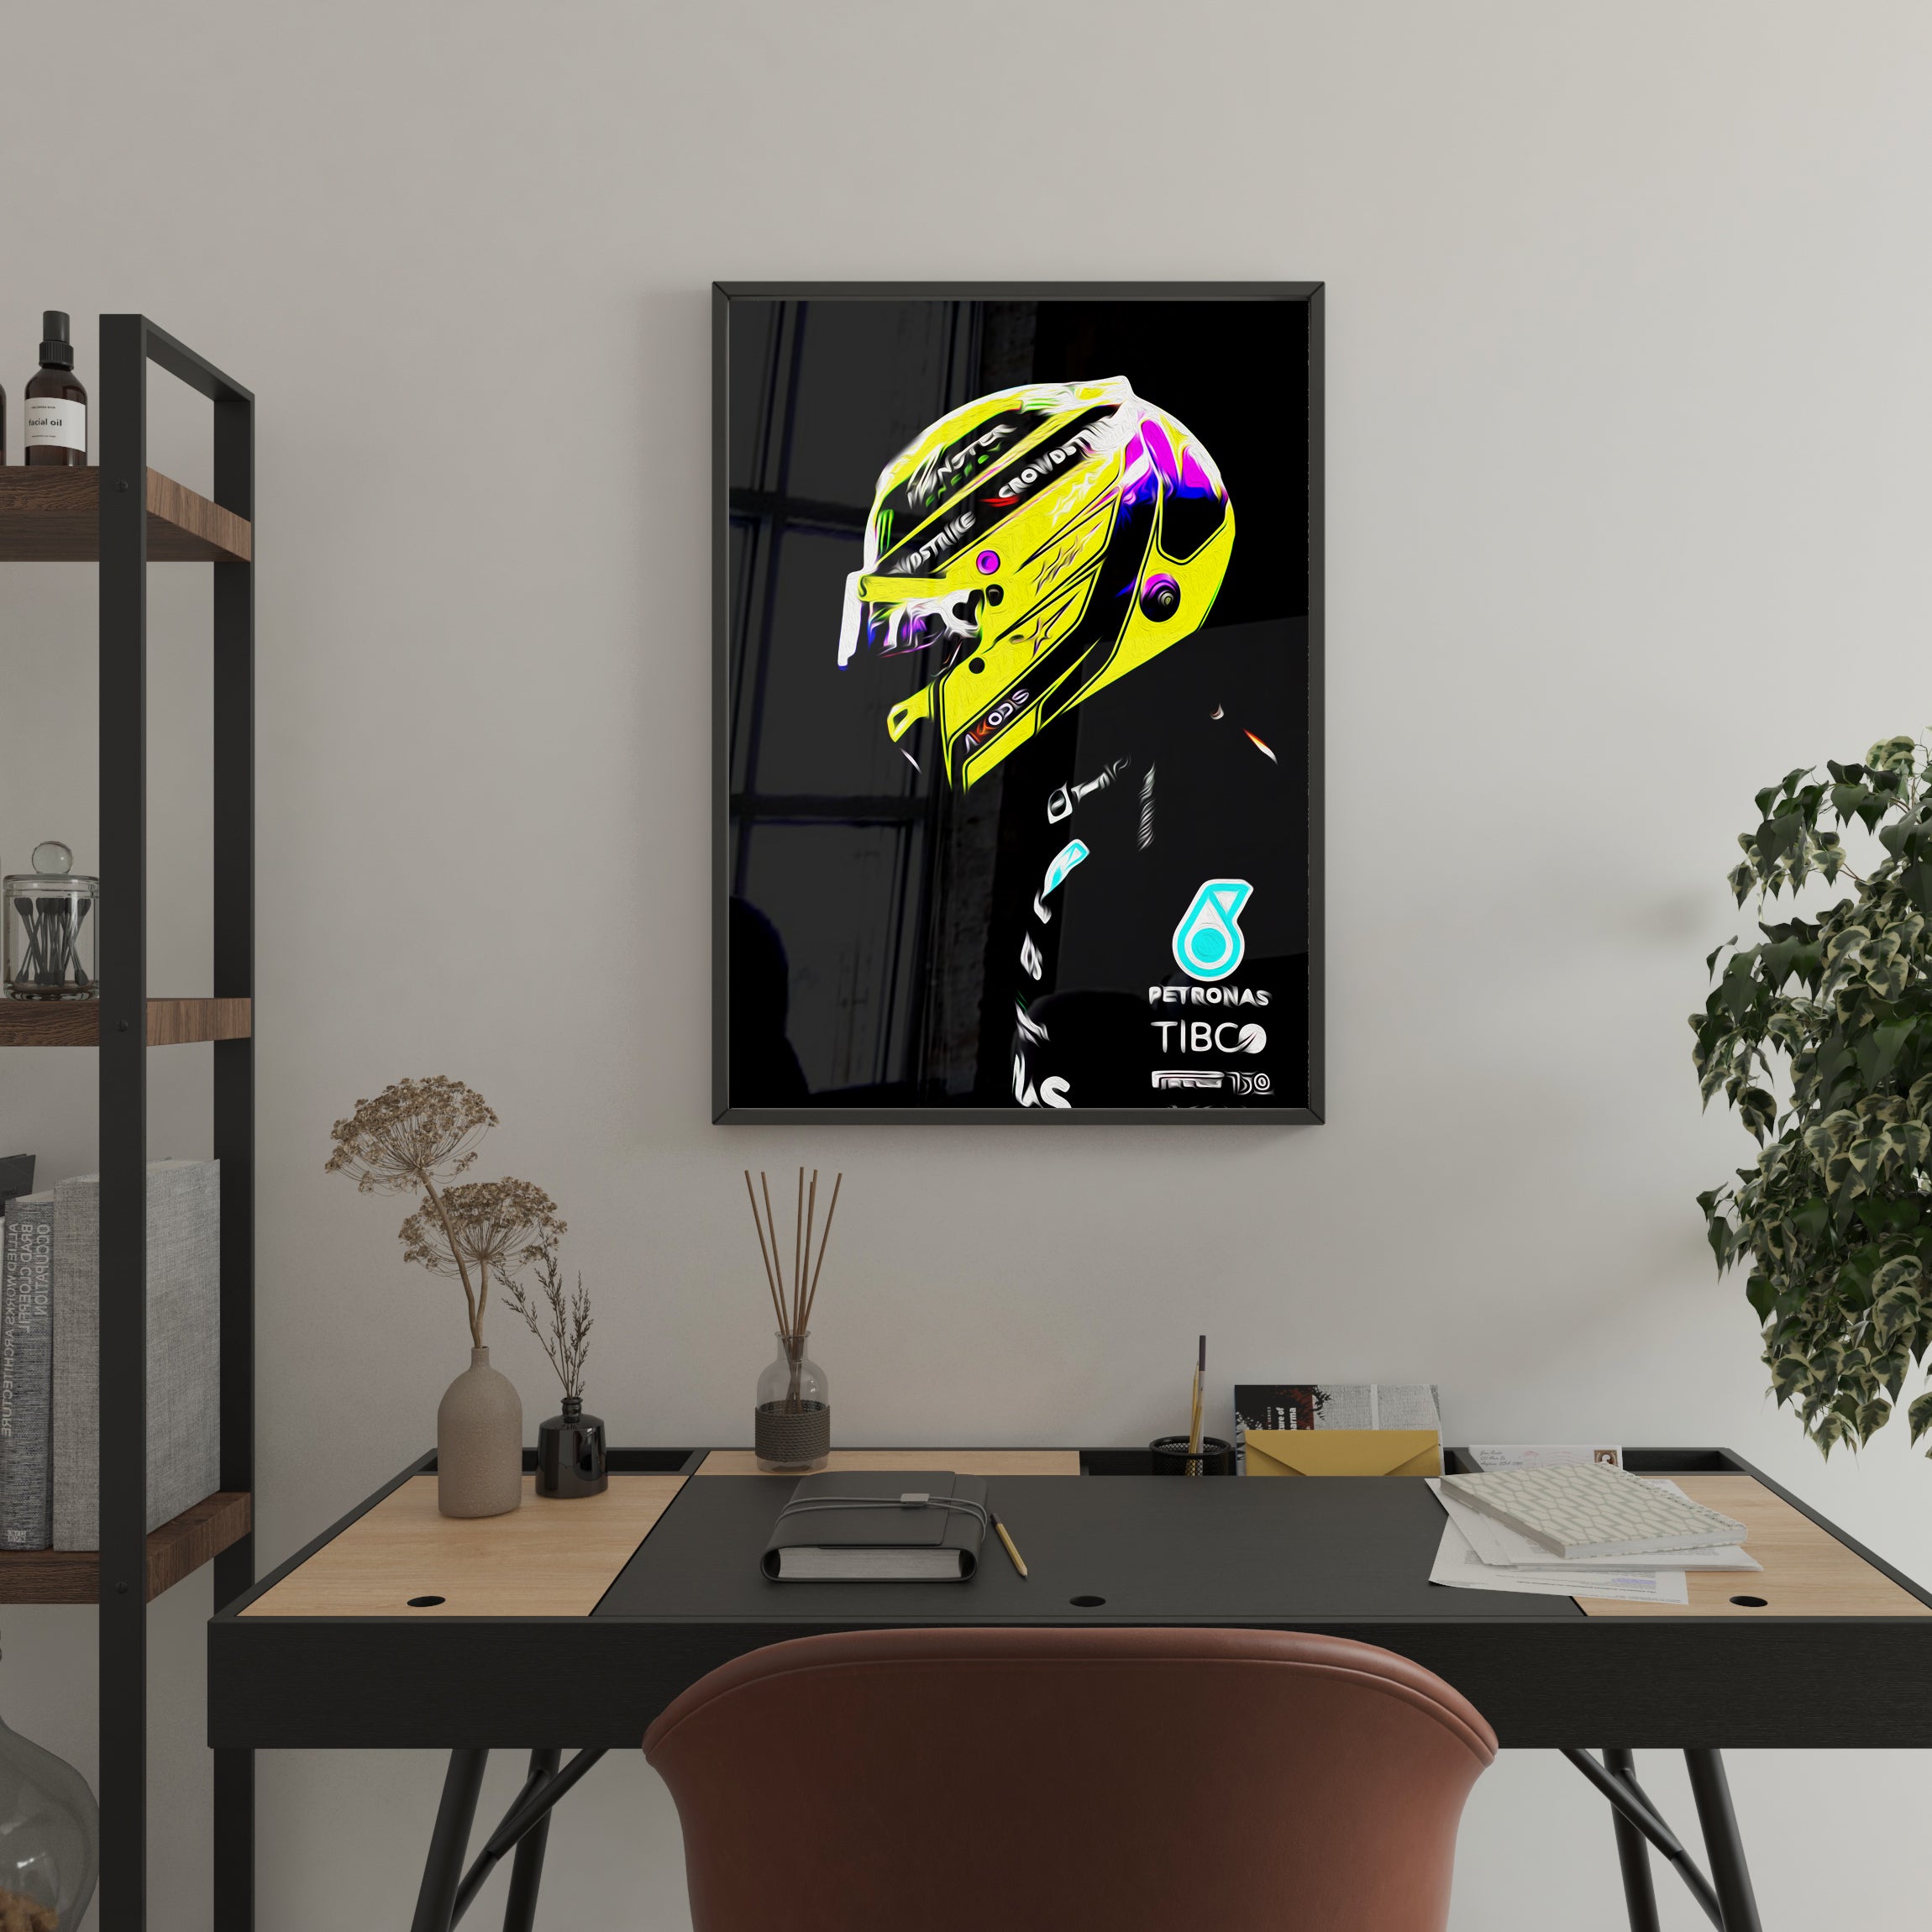 Lewis Hamilton Poster Formula 1 Mercedes F1 Wall Art A4 Poster